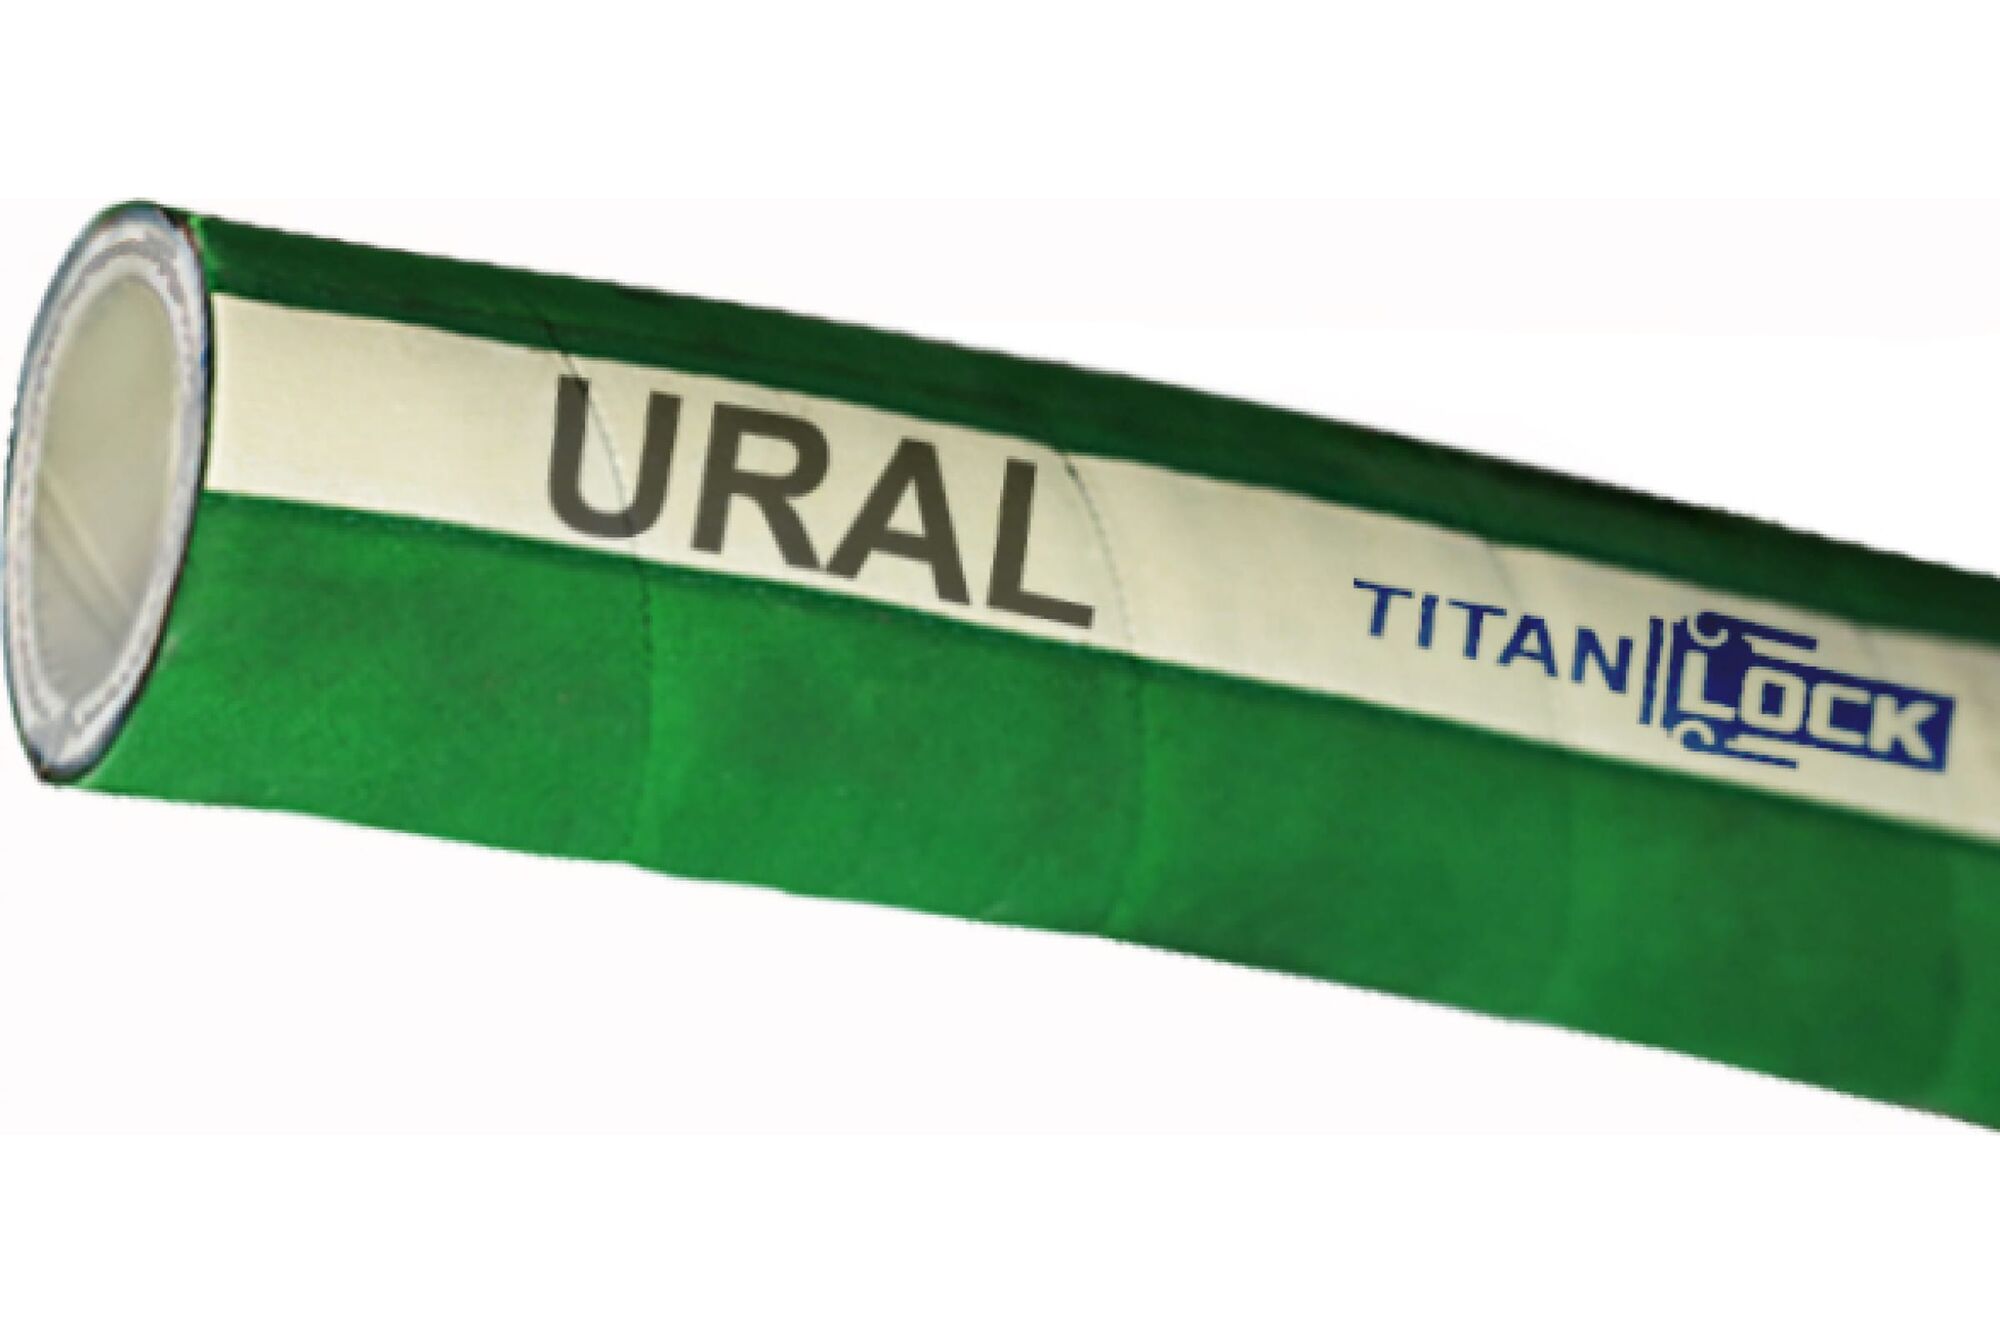 Химостойкий рукав «URAL», внутренний диаметр 20 мм, 16bar, 10 метров, UHMWPE, н/в TITAN LOCK TL020UR